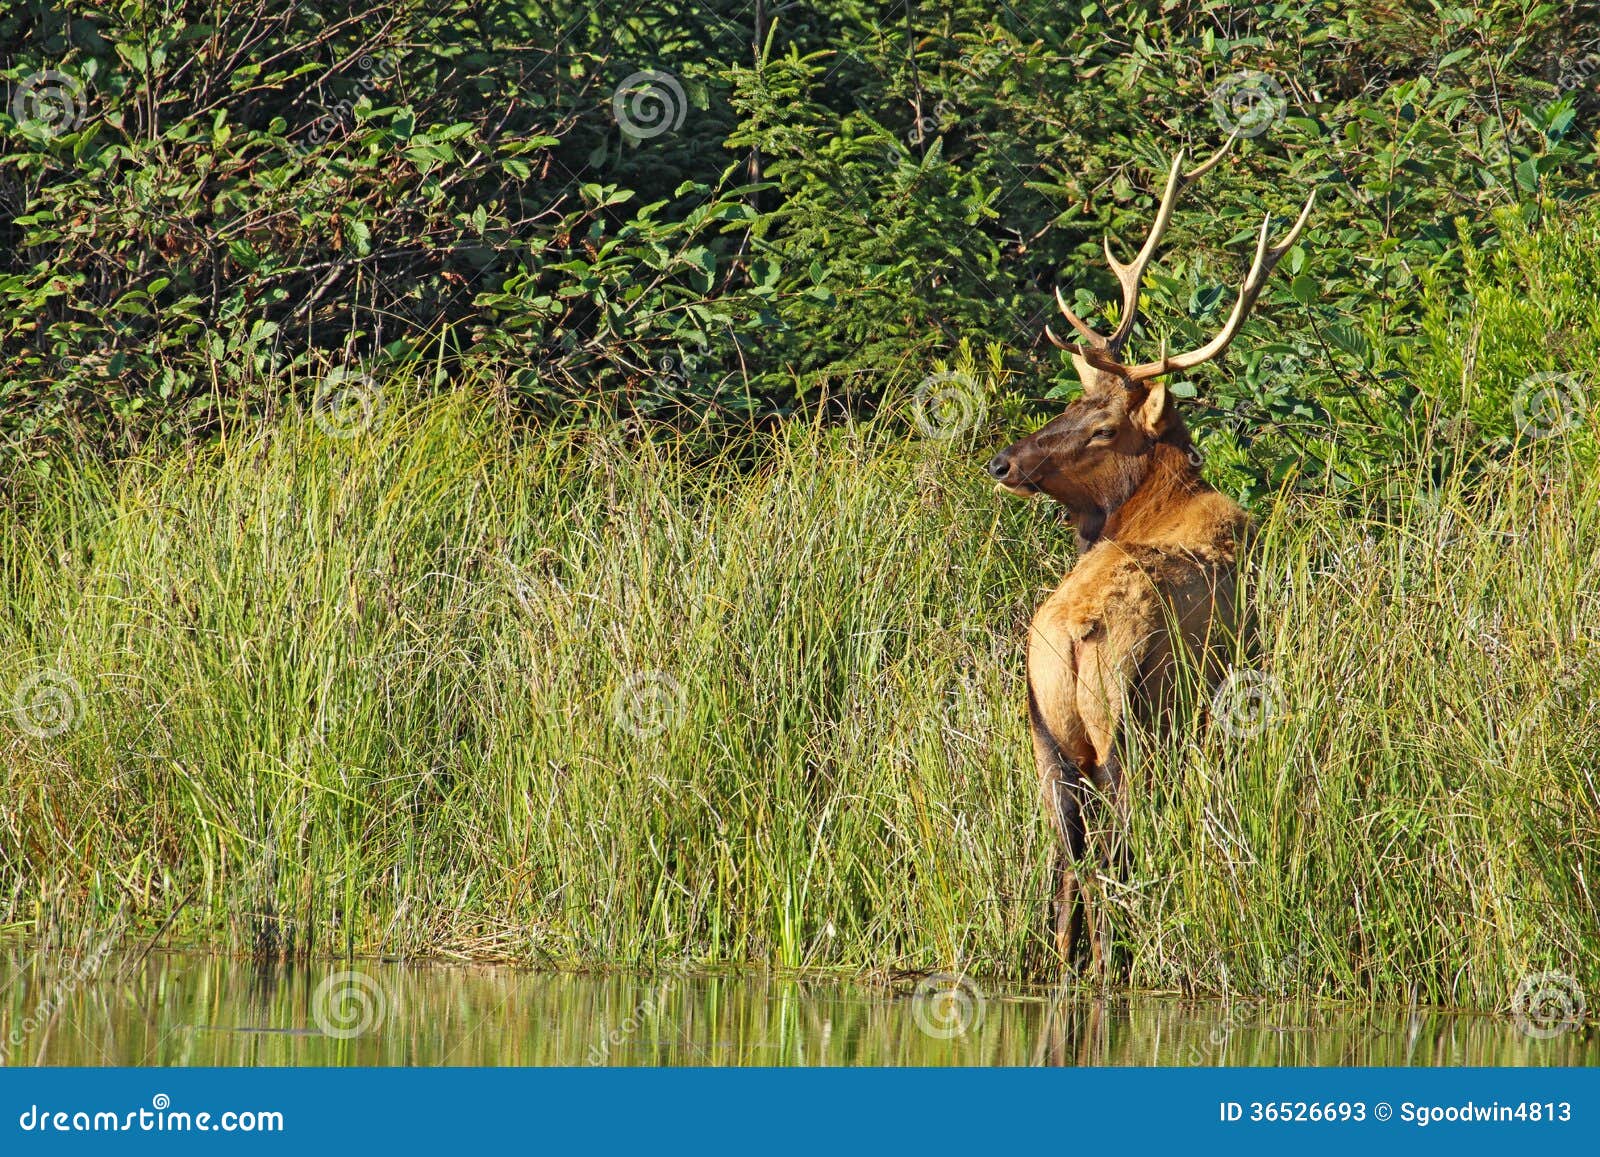 male roosevelt elk in prairie creek redwoods state park, california